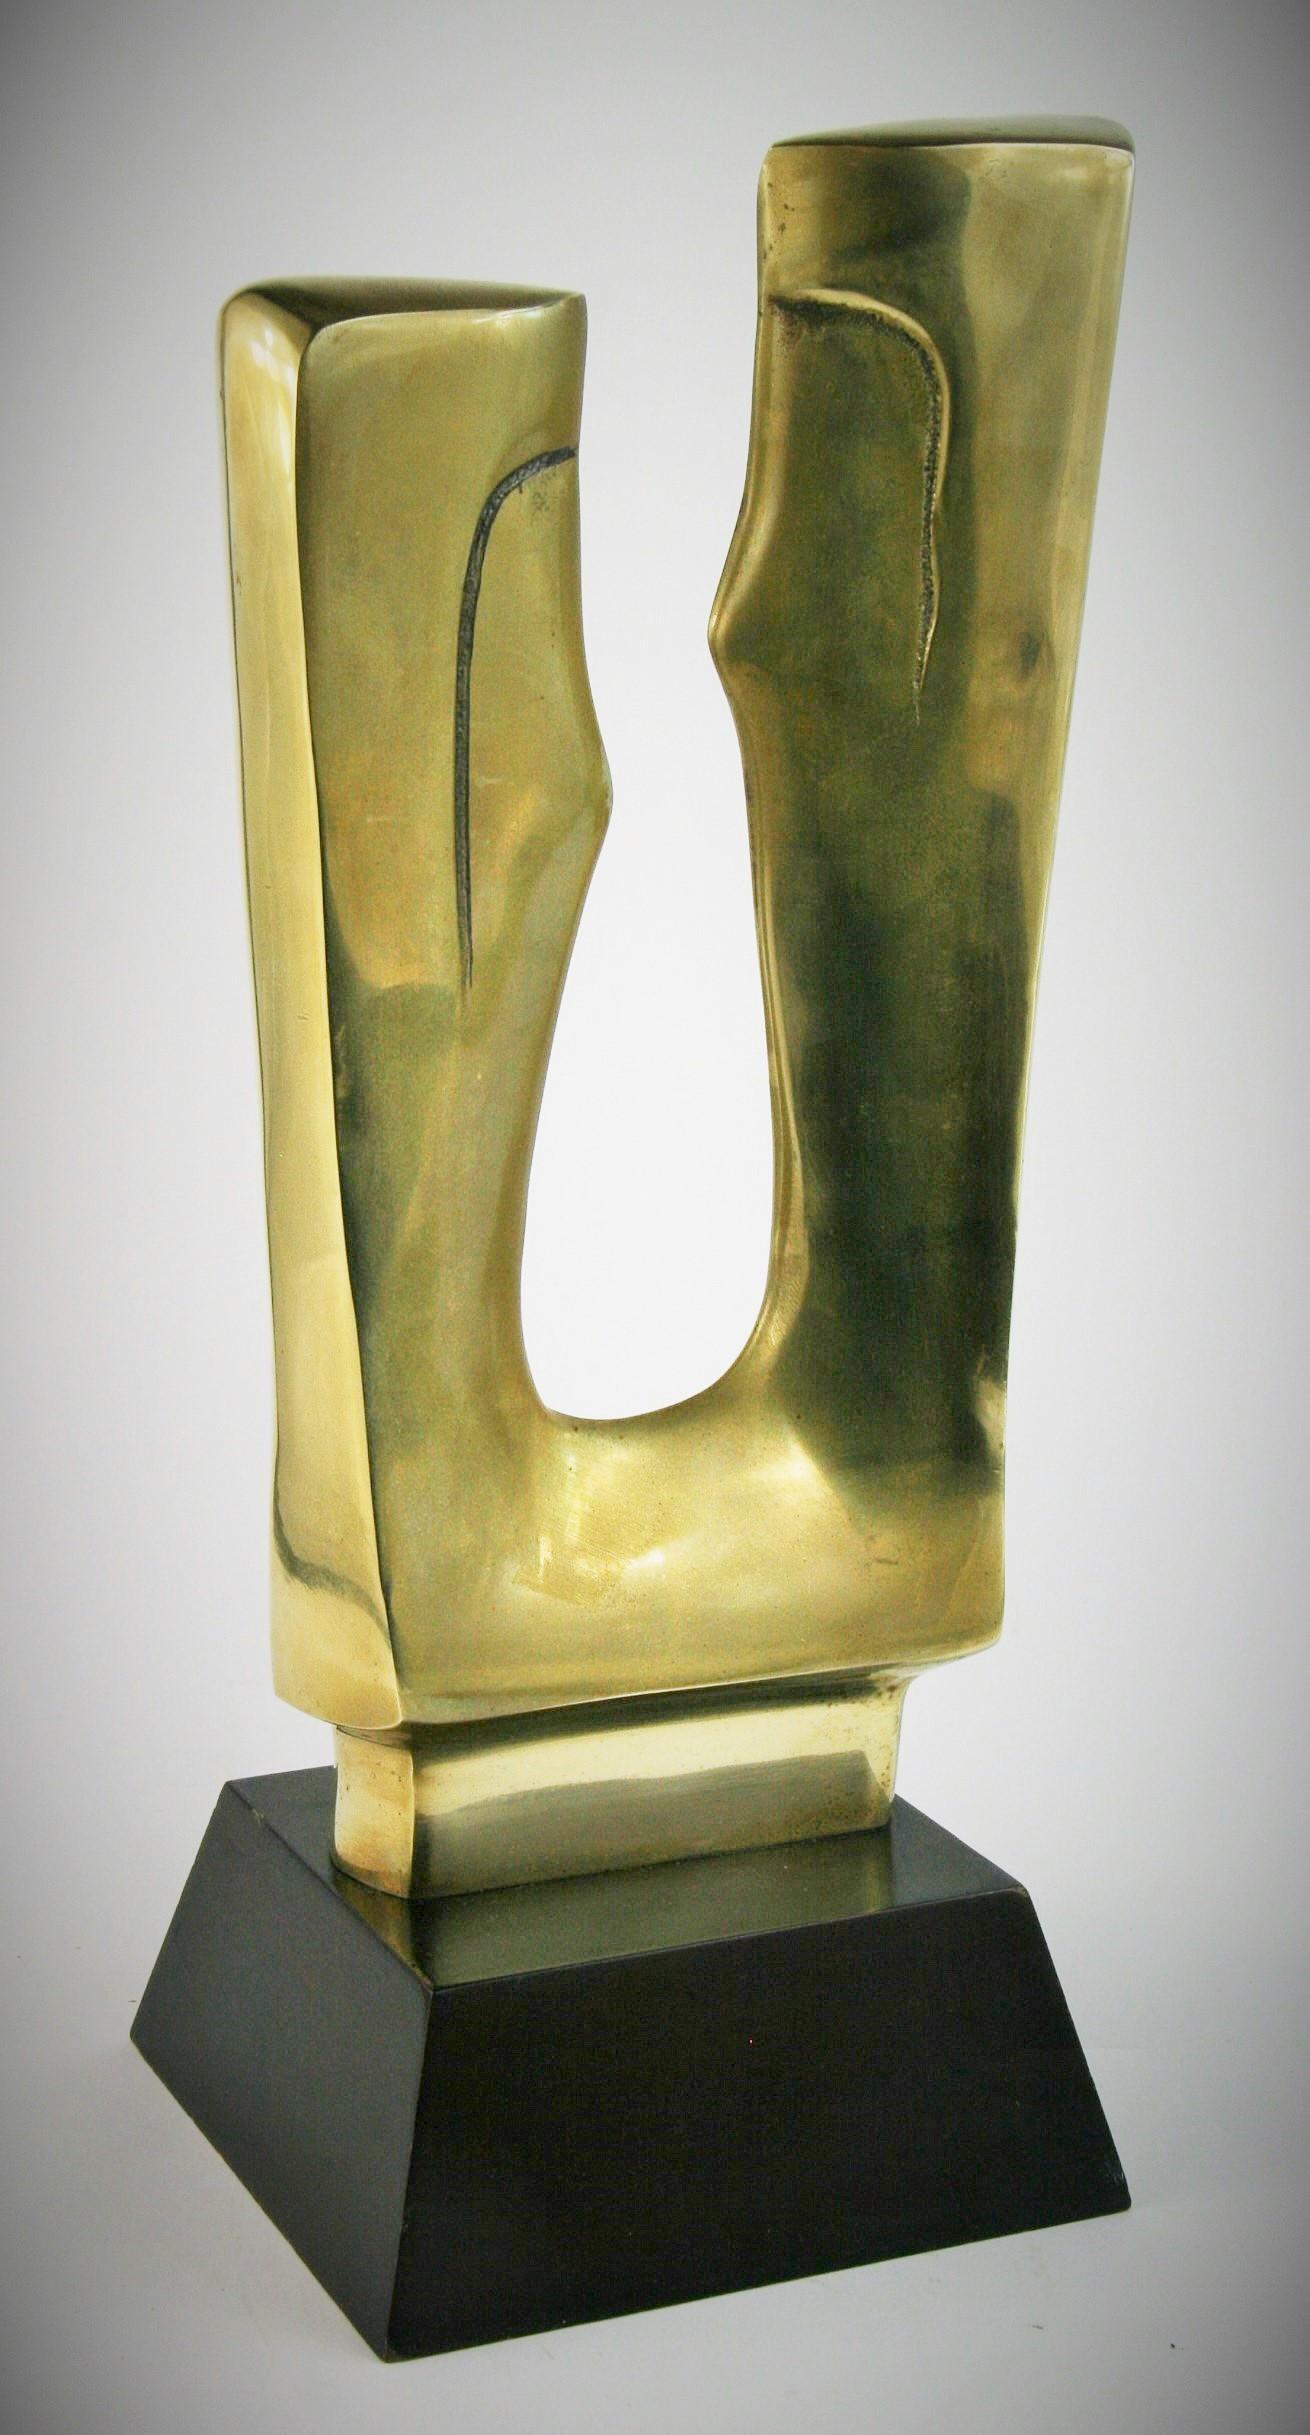 abstract brass sculpture